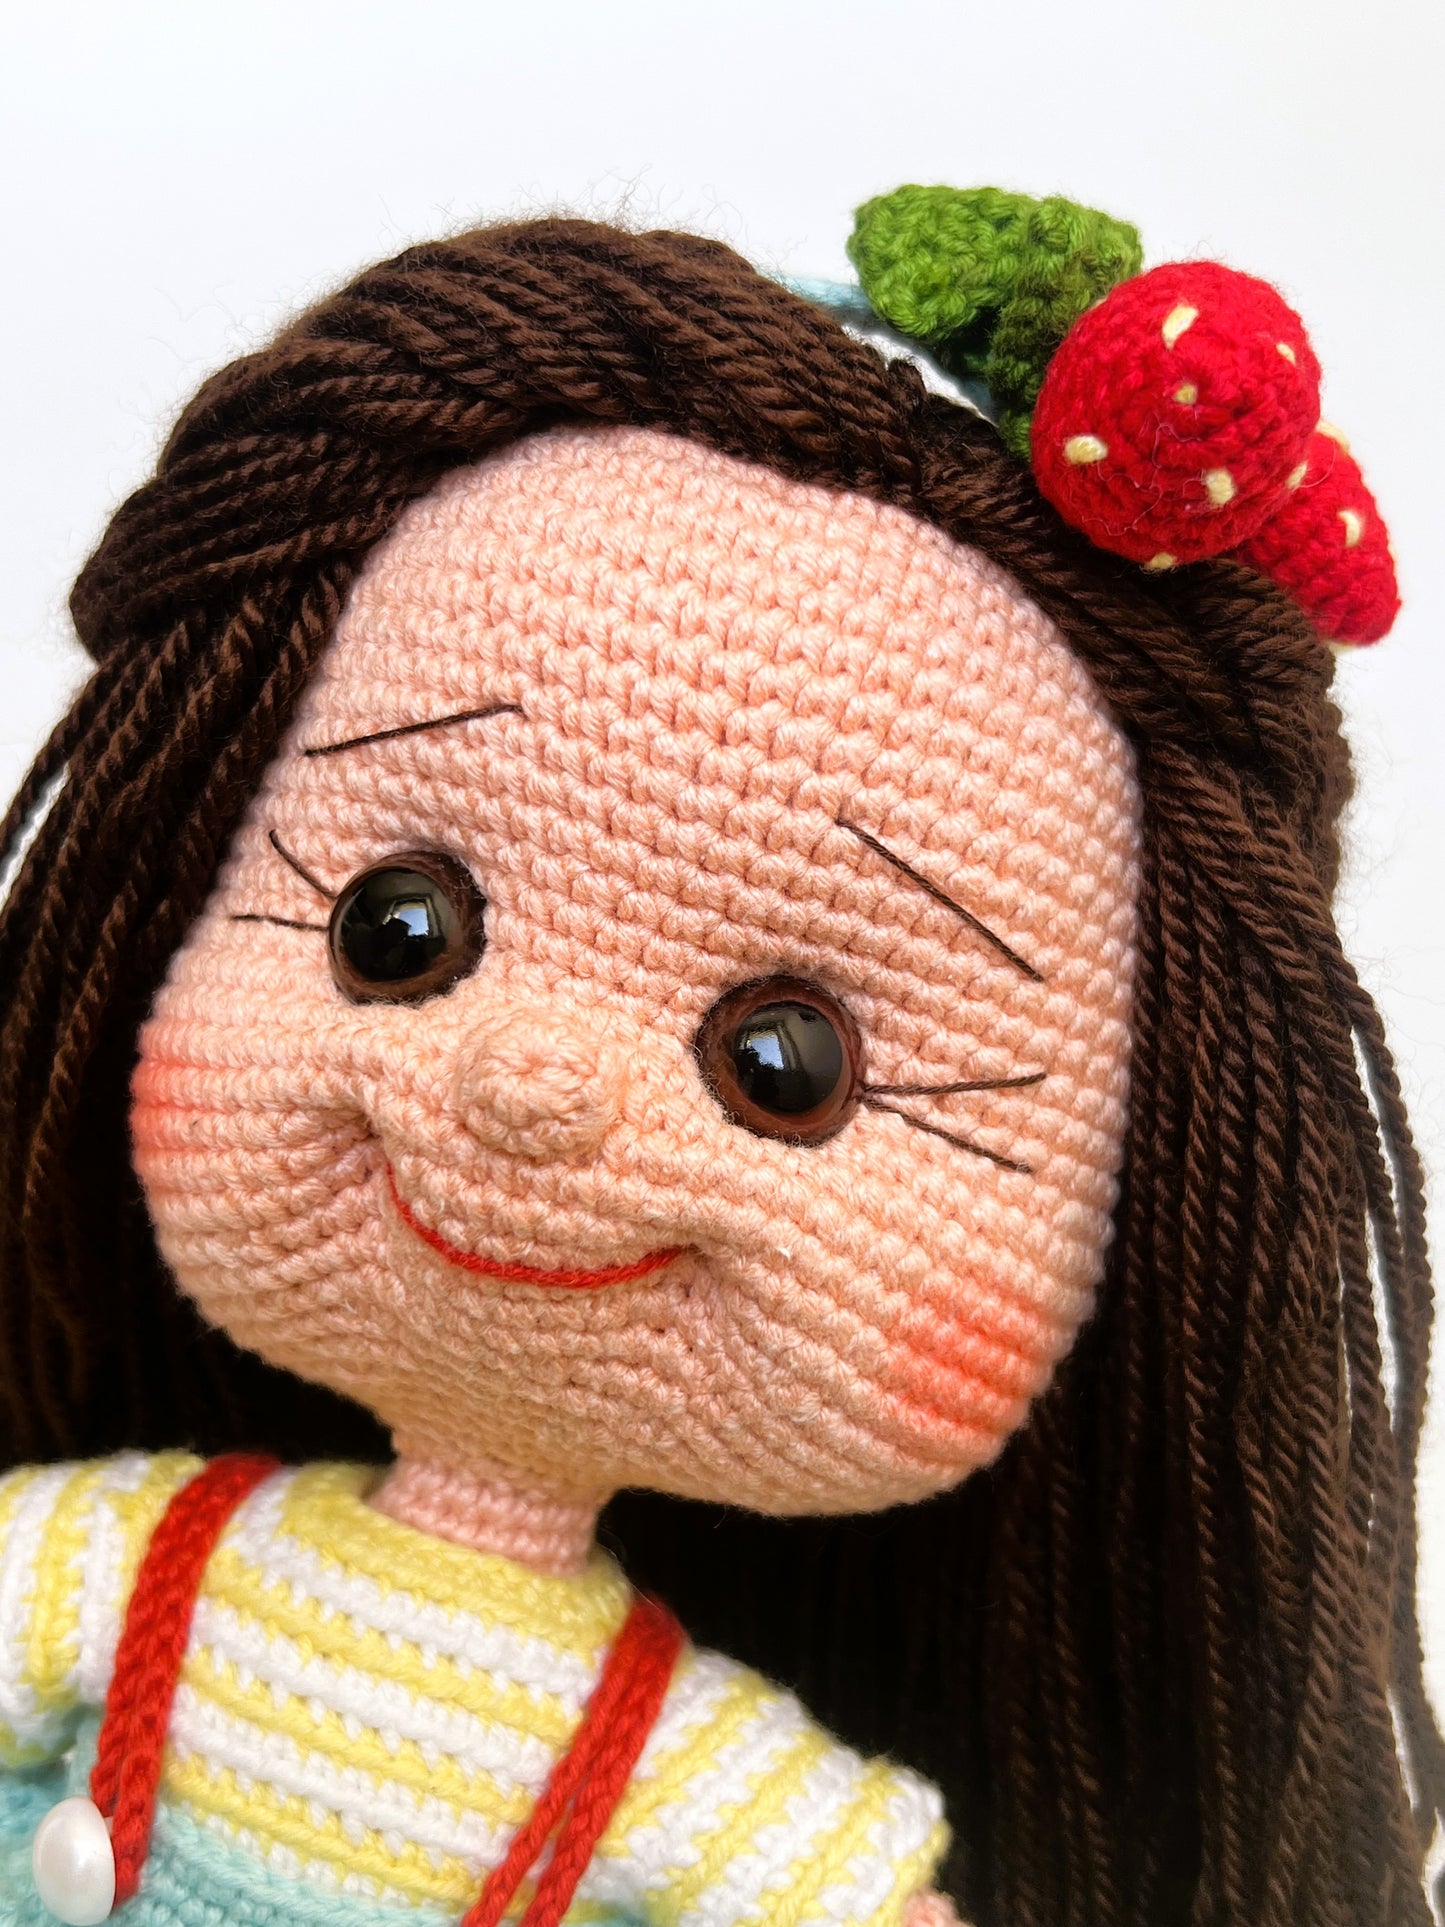 Puppe Erdbeere, 40cm